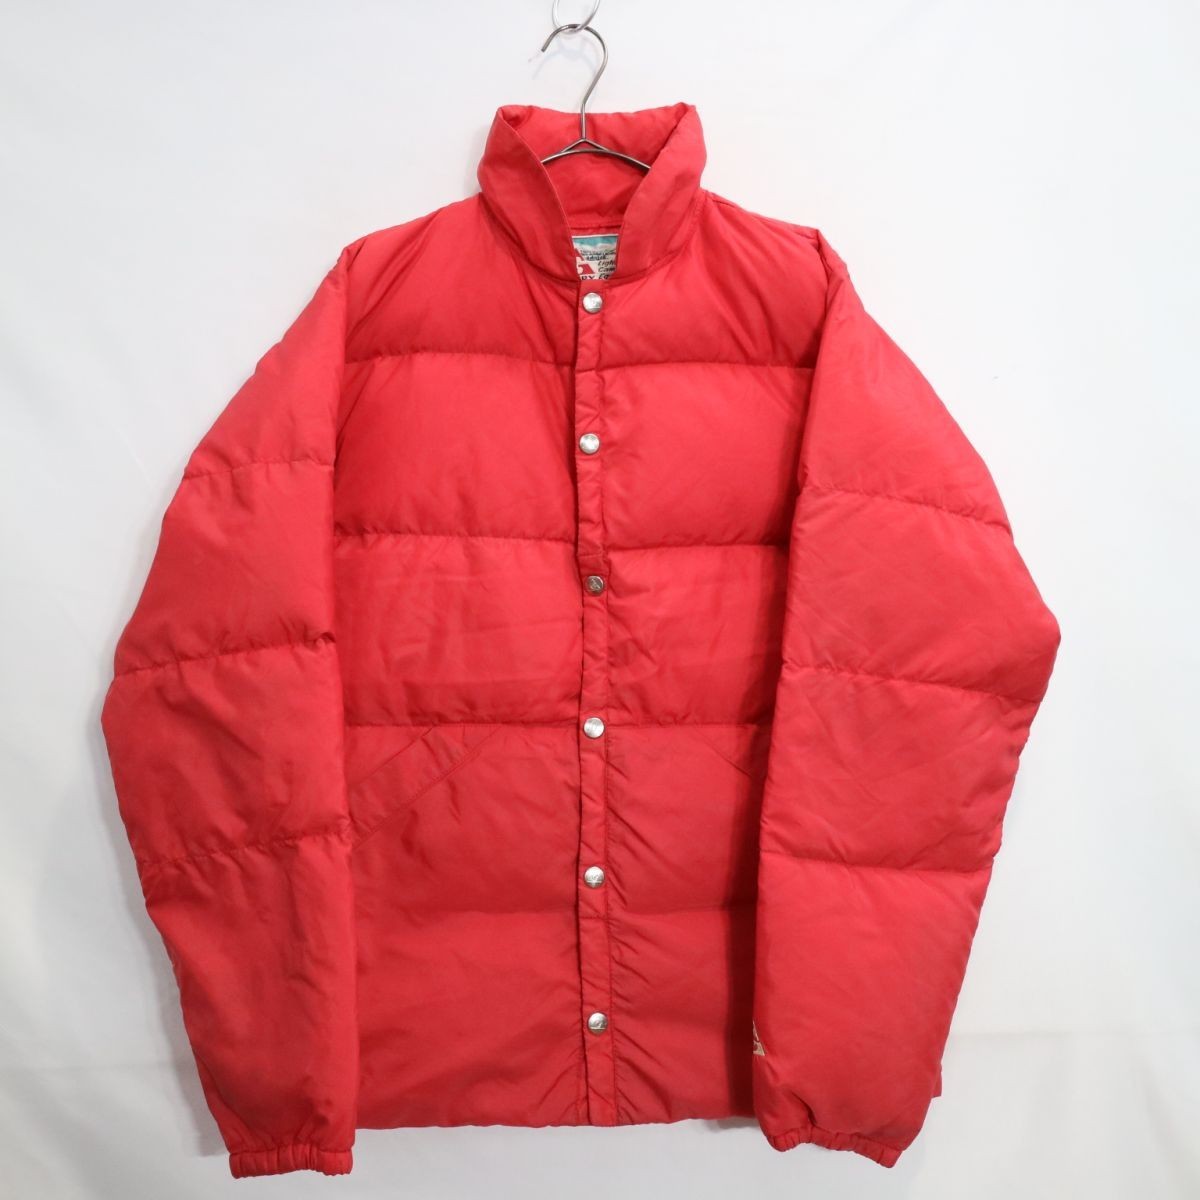 90年代 USA製 GERRY ジェリー ダウンジャケット アウトドア ウィンターウェア アウター 防寒 レッド 赤色 (Lサイズ相当) 中古 古着 L7498_画像1